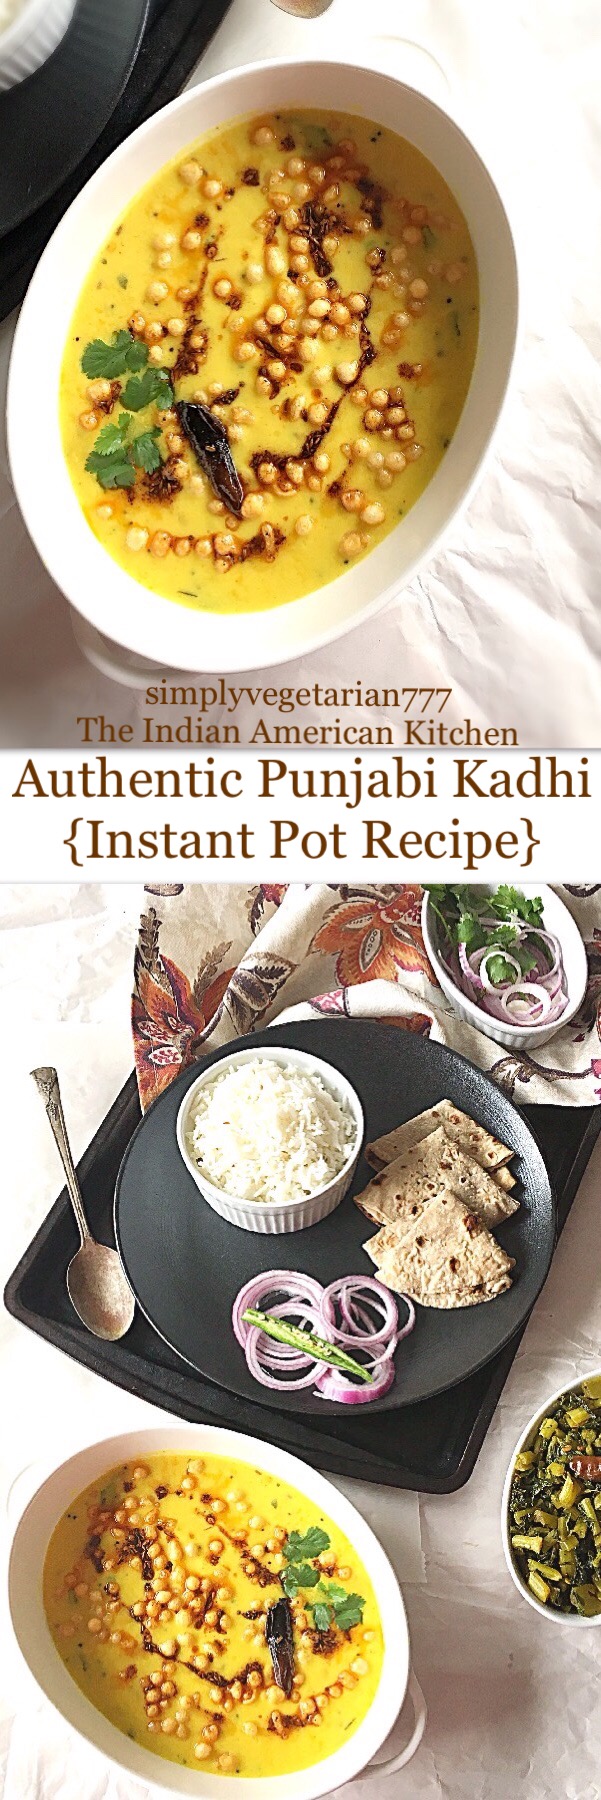 Instant Pot Punjabi Kadhi Recipe - Easy & Authentic